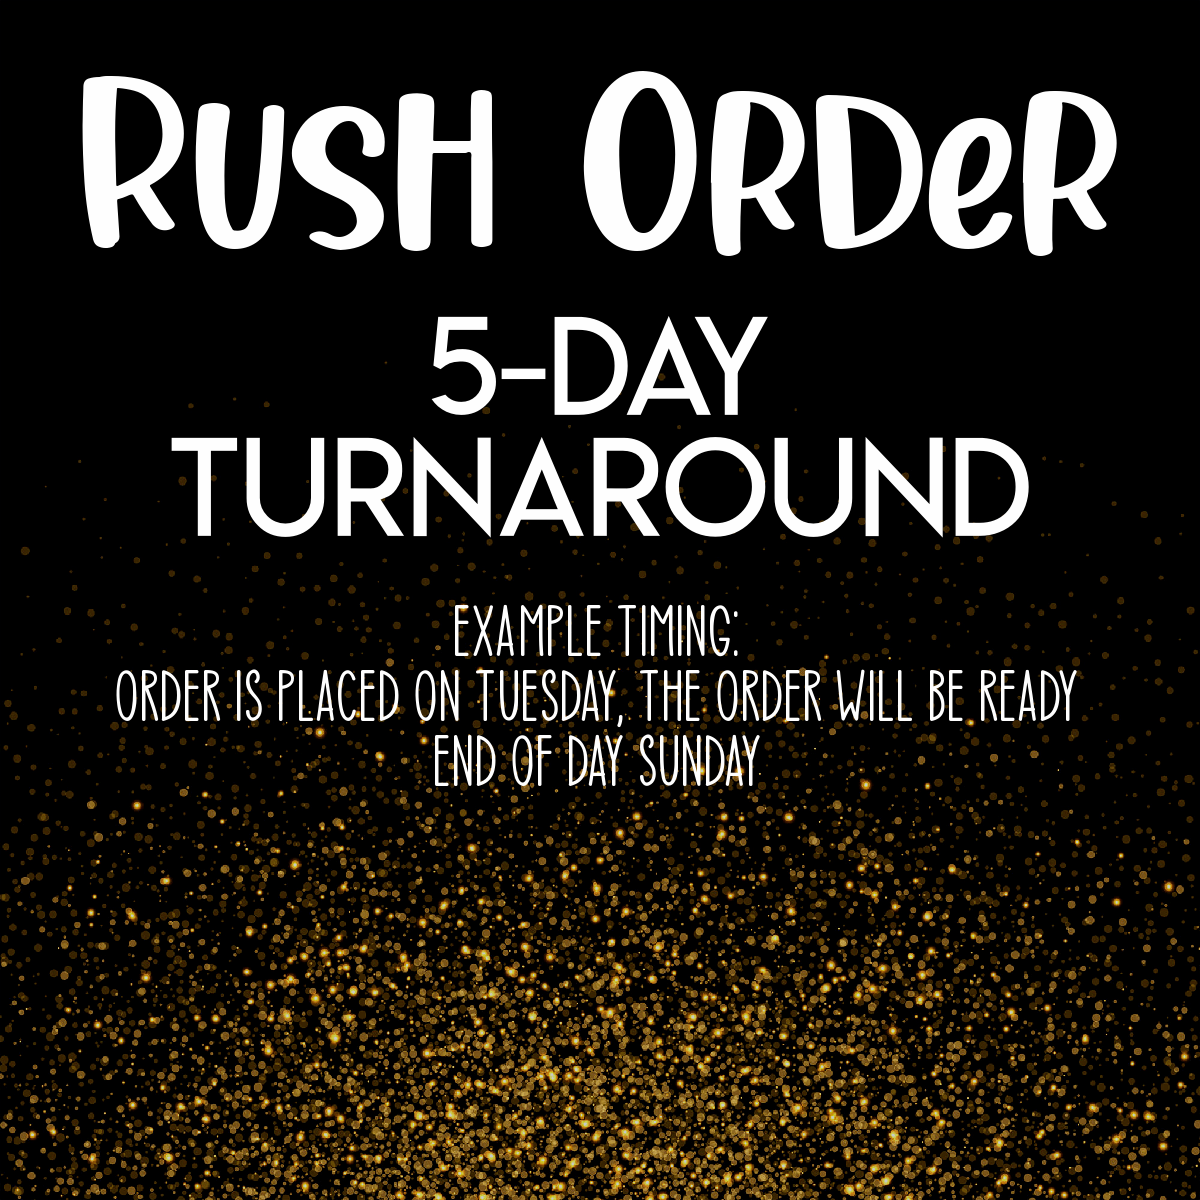 Rush Order: 5-Day Turnaround